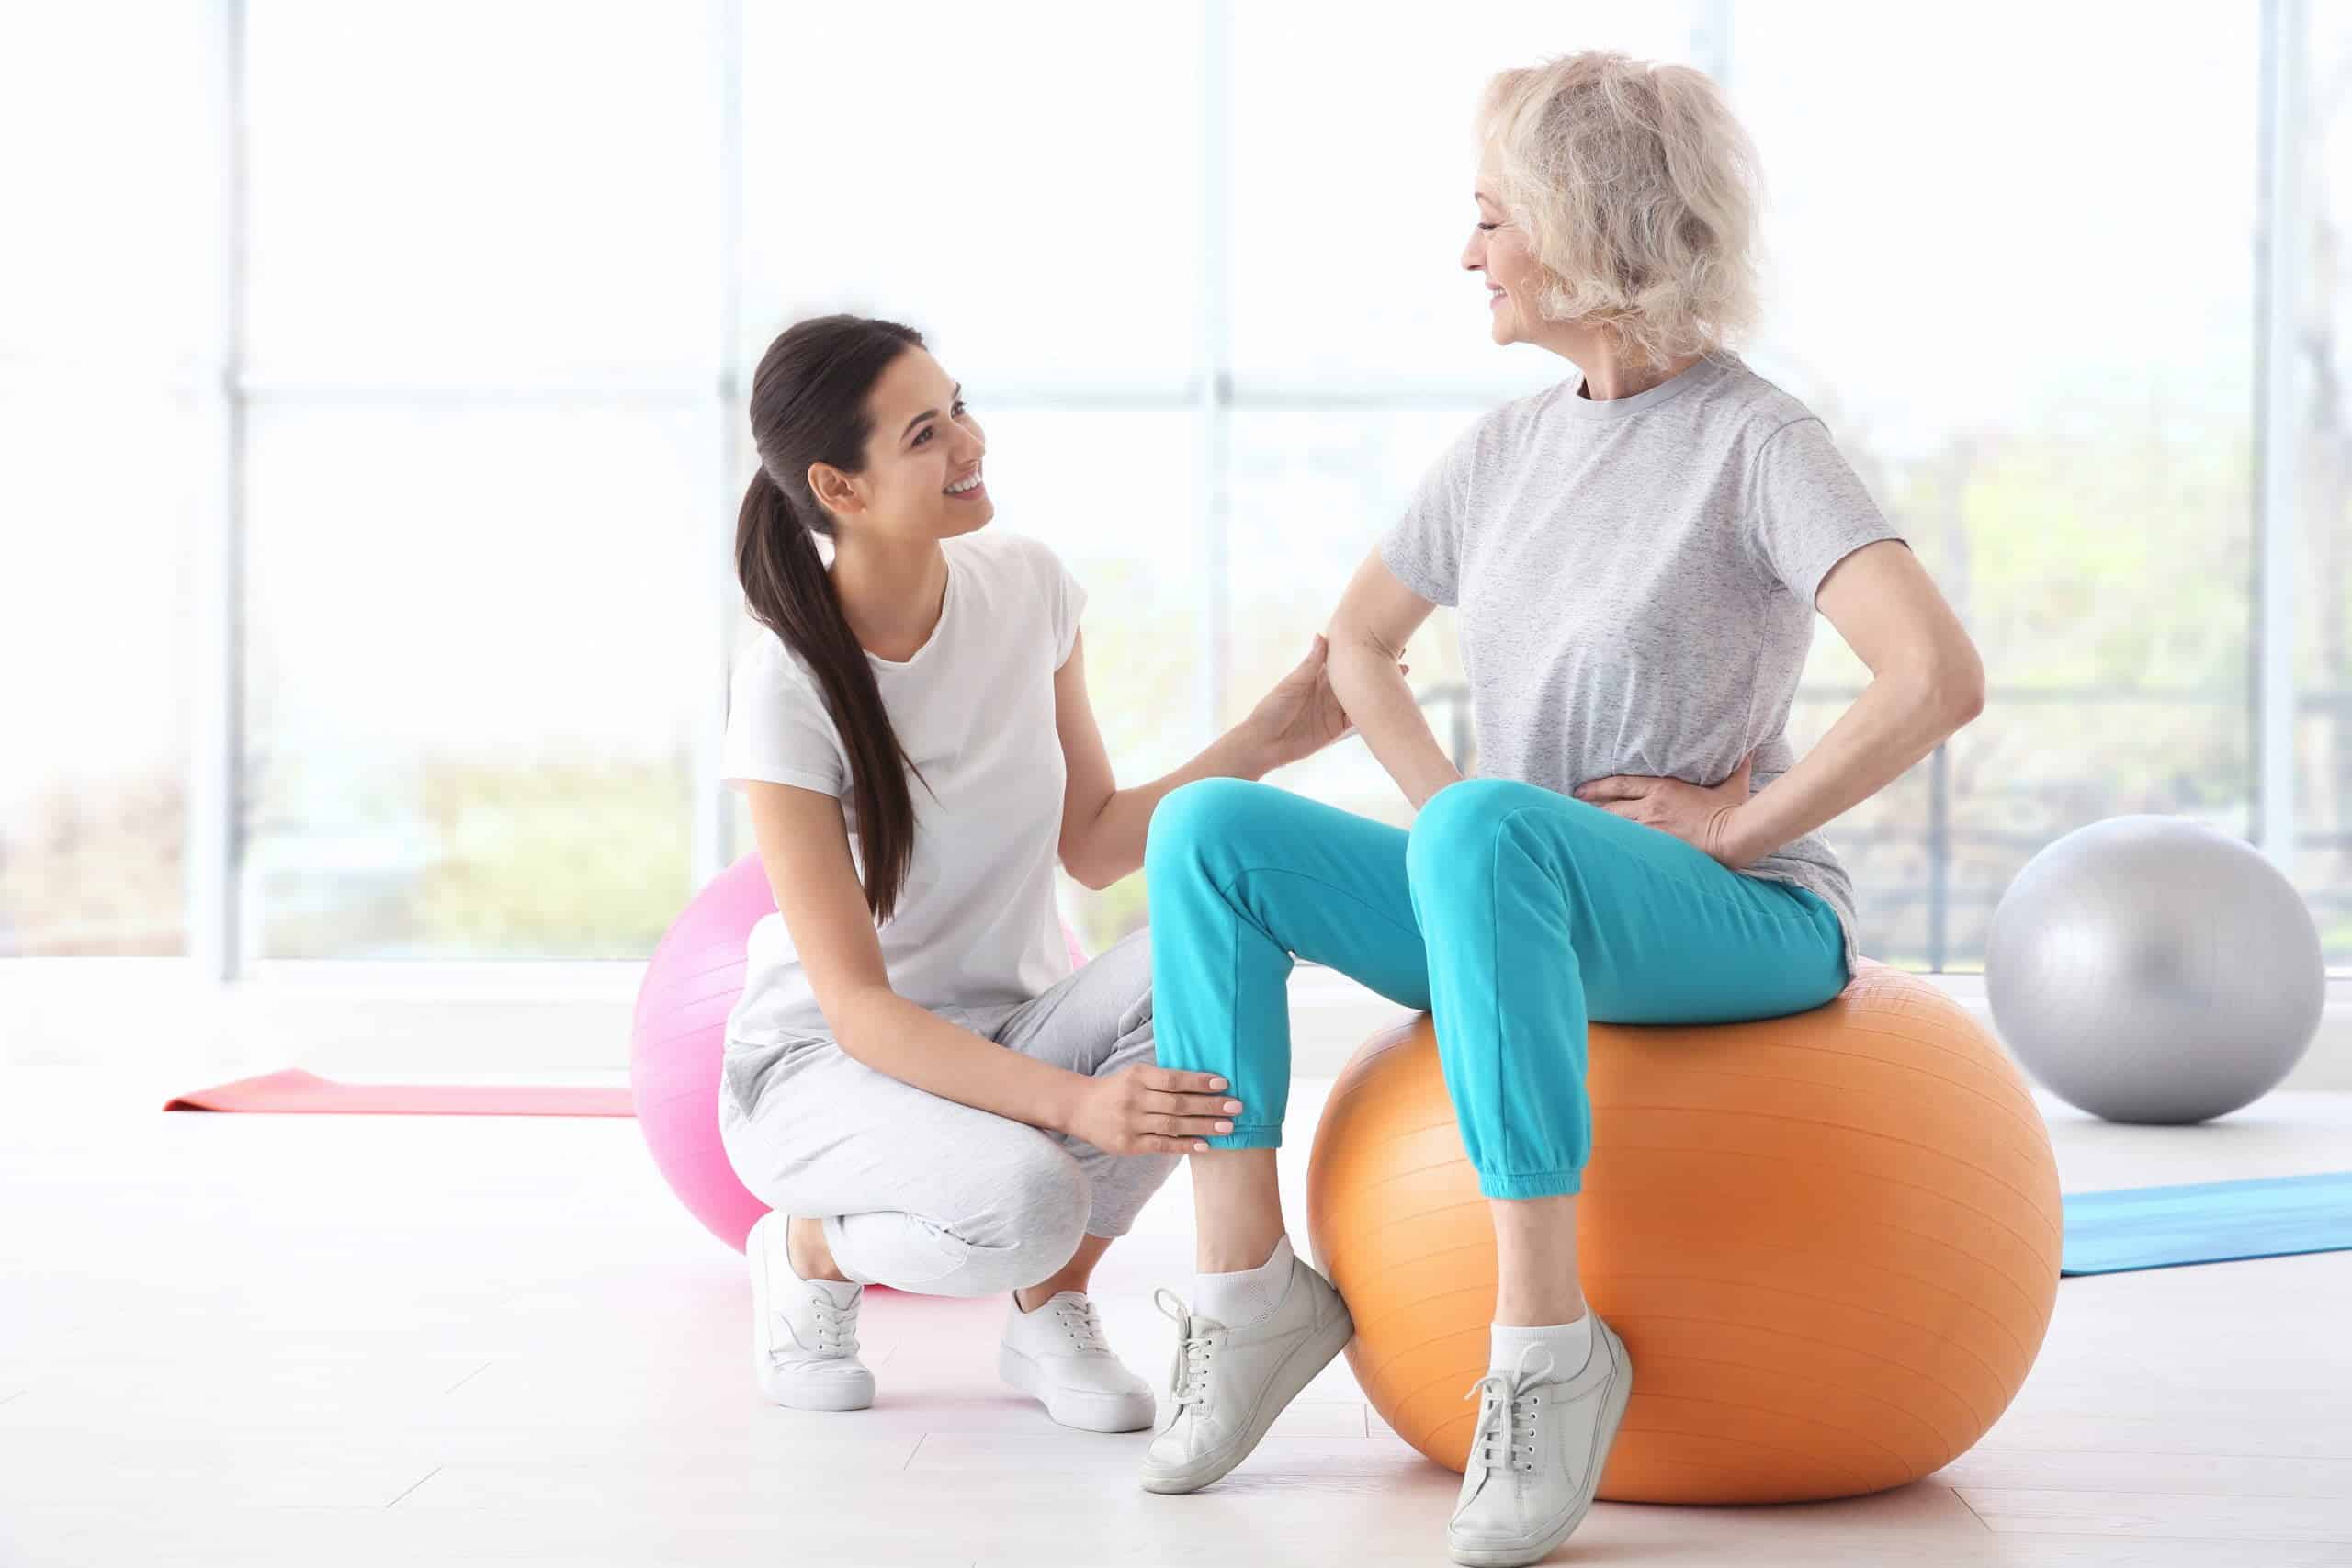 Tips to Help Seniors Start Exercising Safely